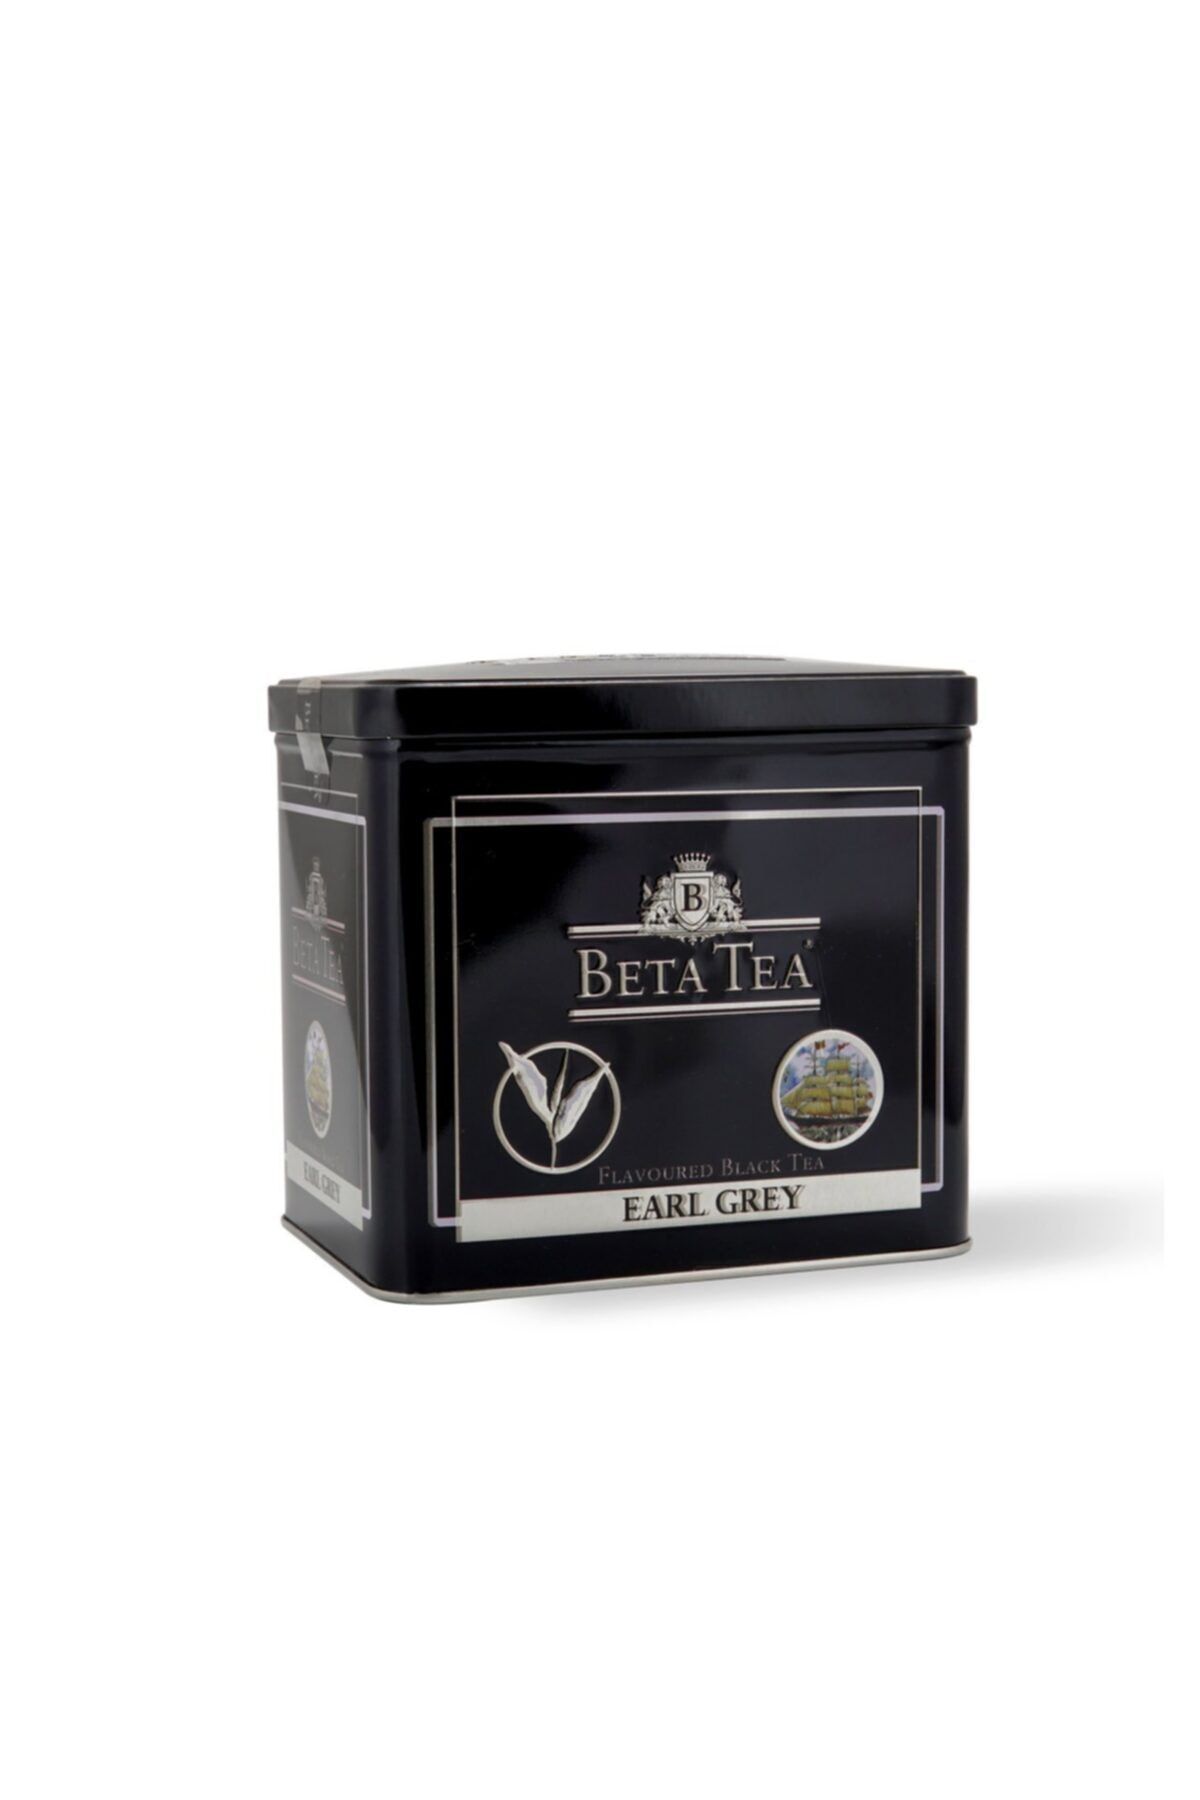 Beta Tea Beta Earl Grey Metal Ambalaj 500 gr  Bergamot Tomurcuk Çayı